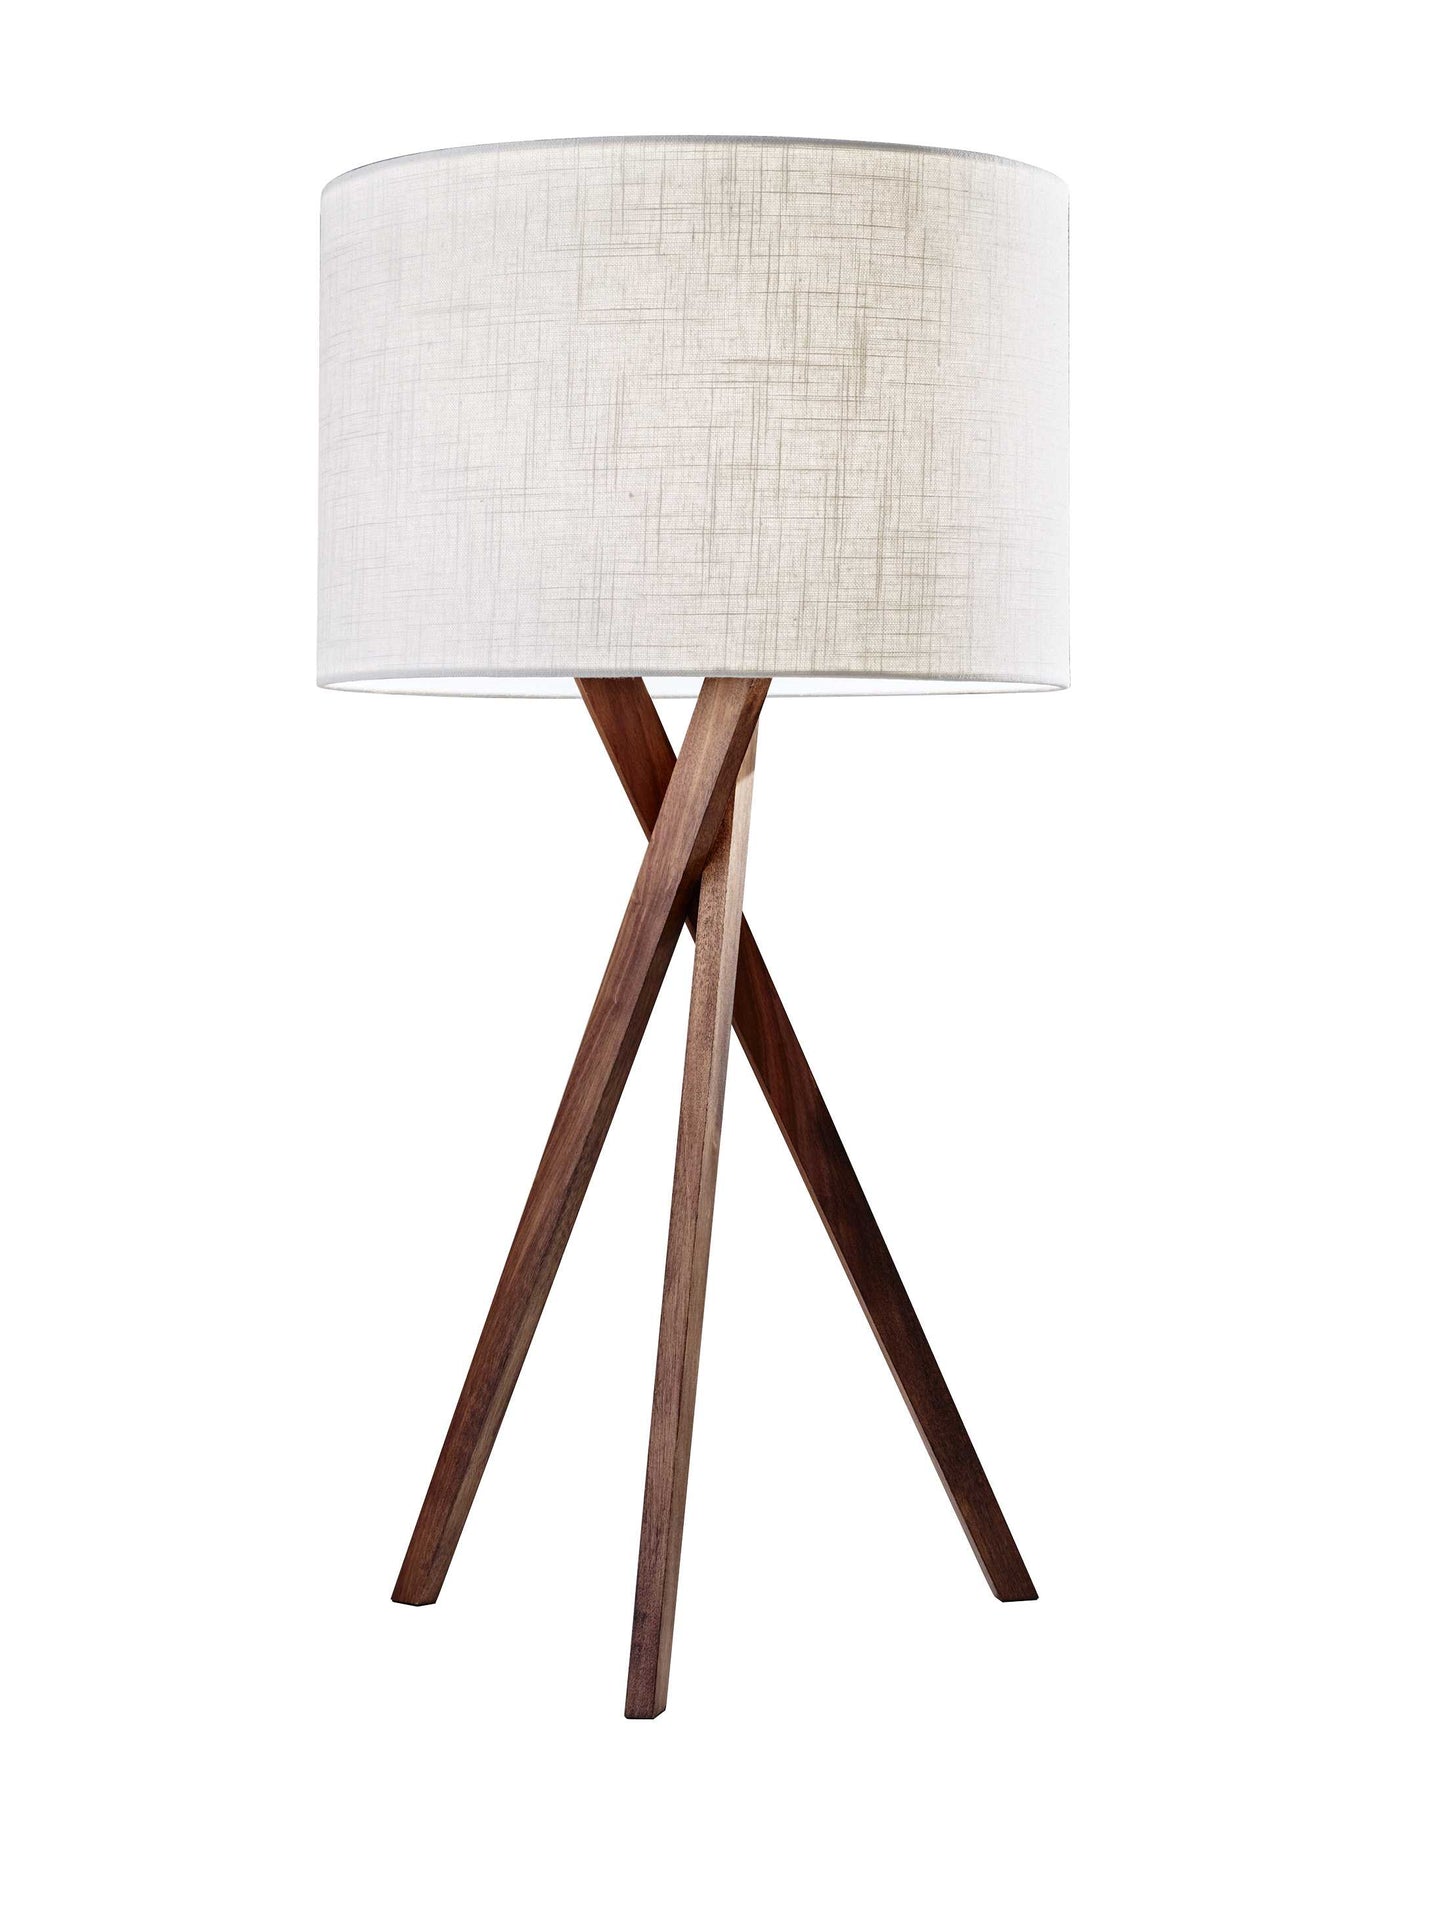 15" X 15" X 29.5" Walnut Wood Table Lamp